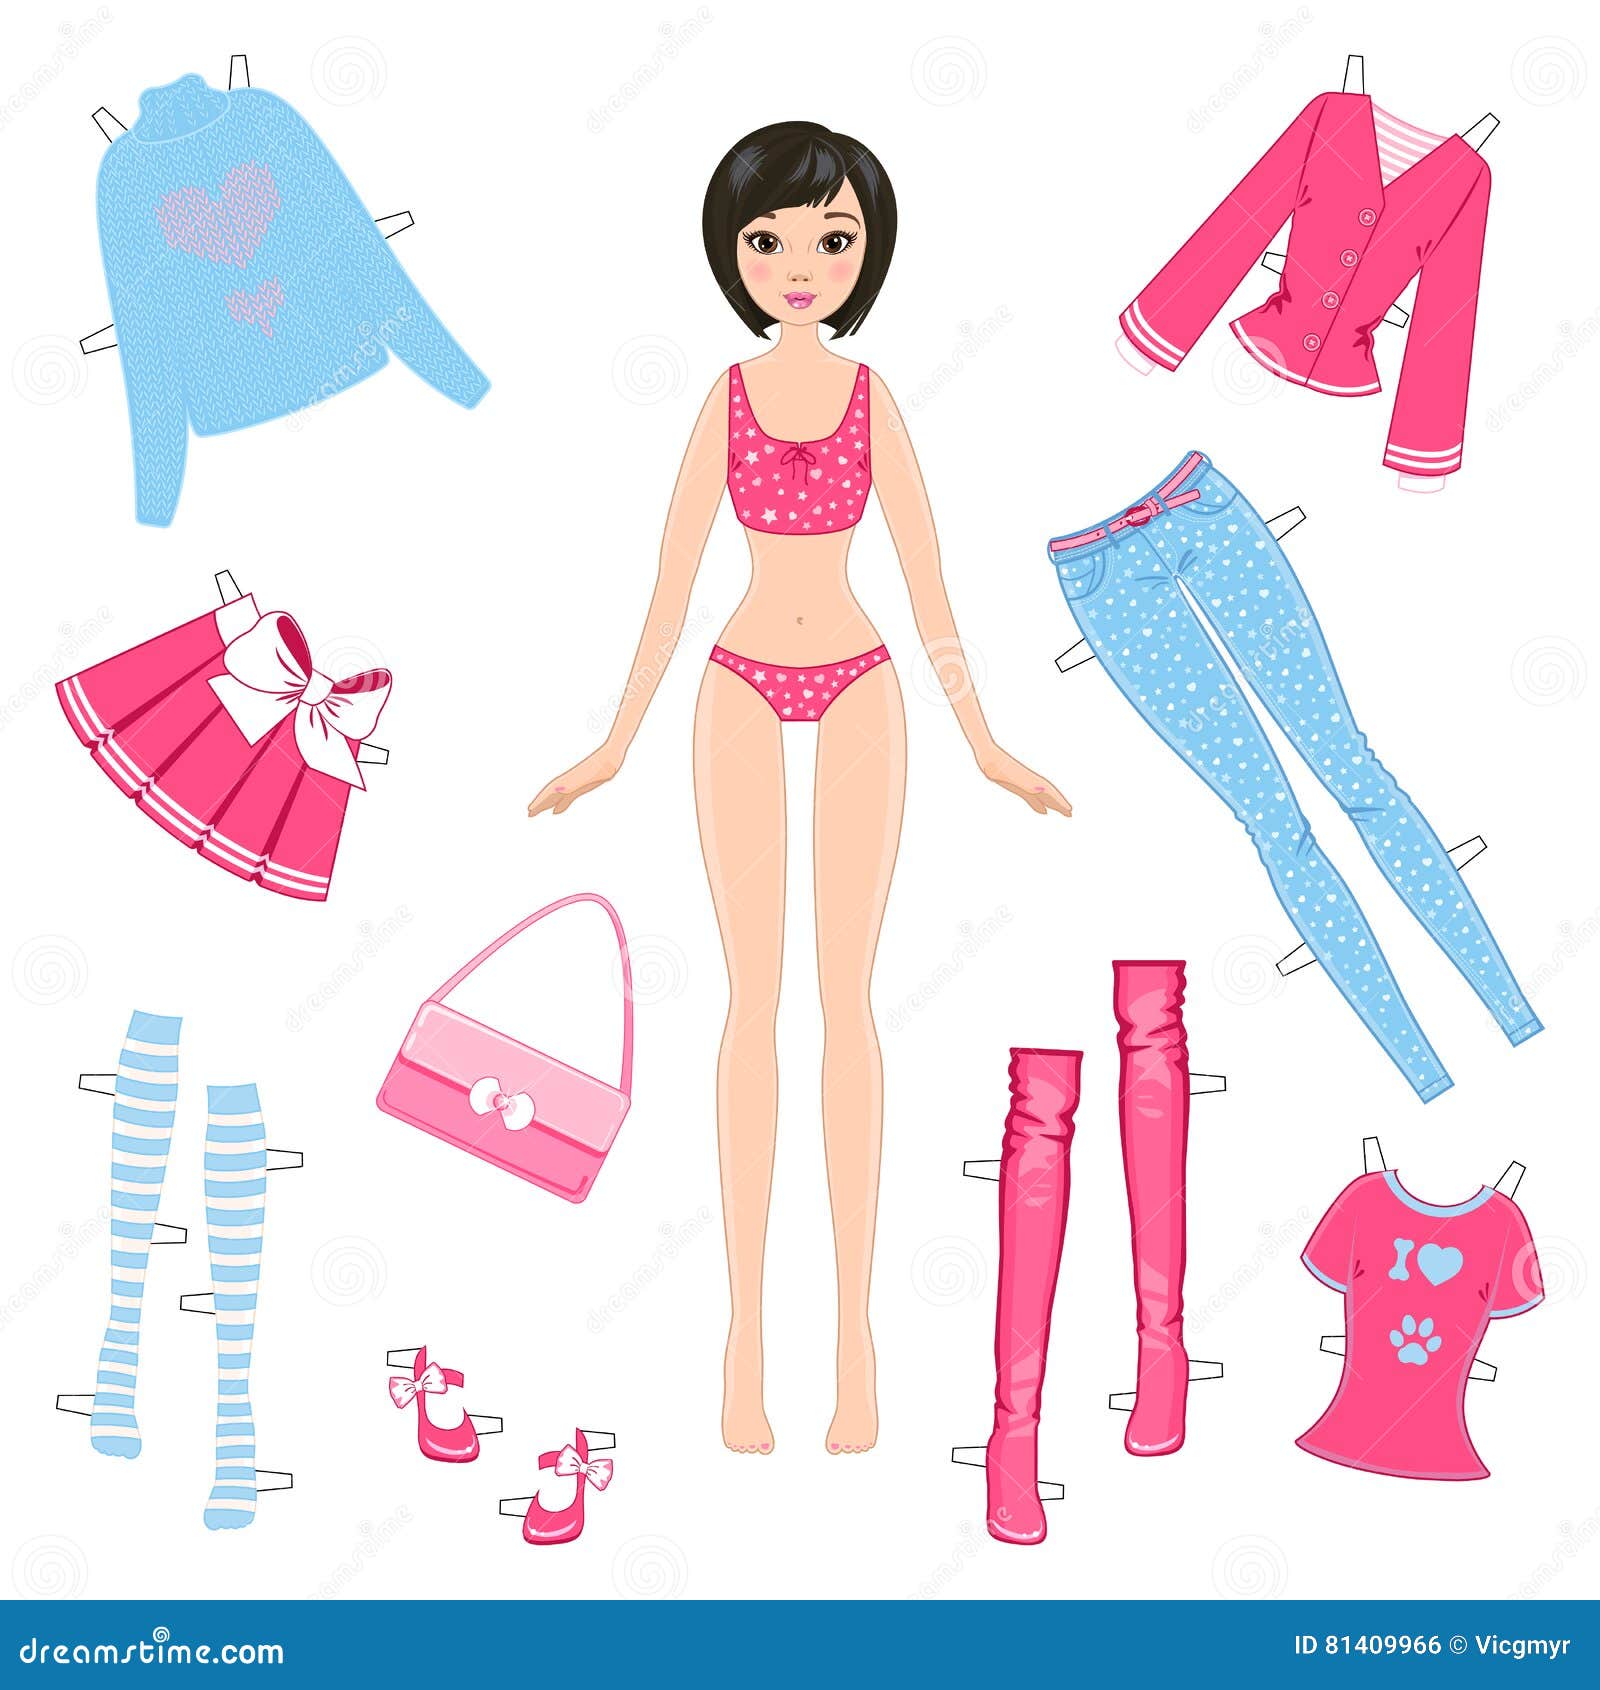 Boneca de papel com roupas e: vetor stock (livre de direitos) 325212497, Shutterstock